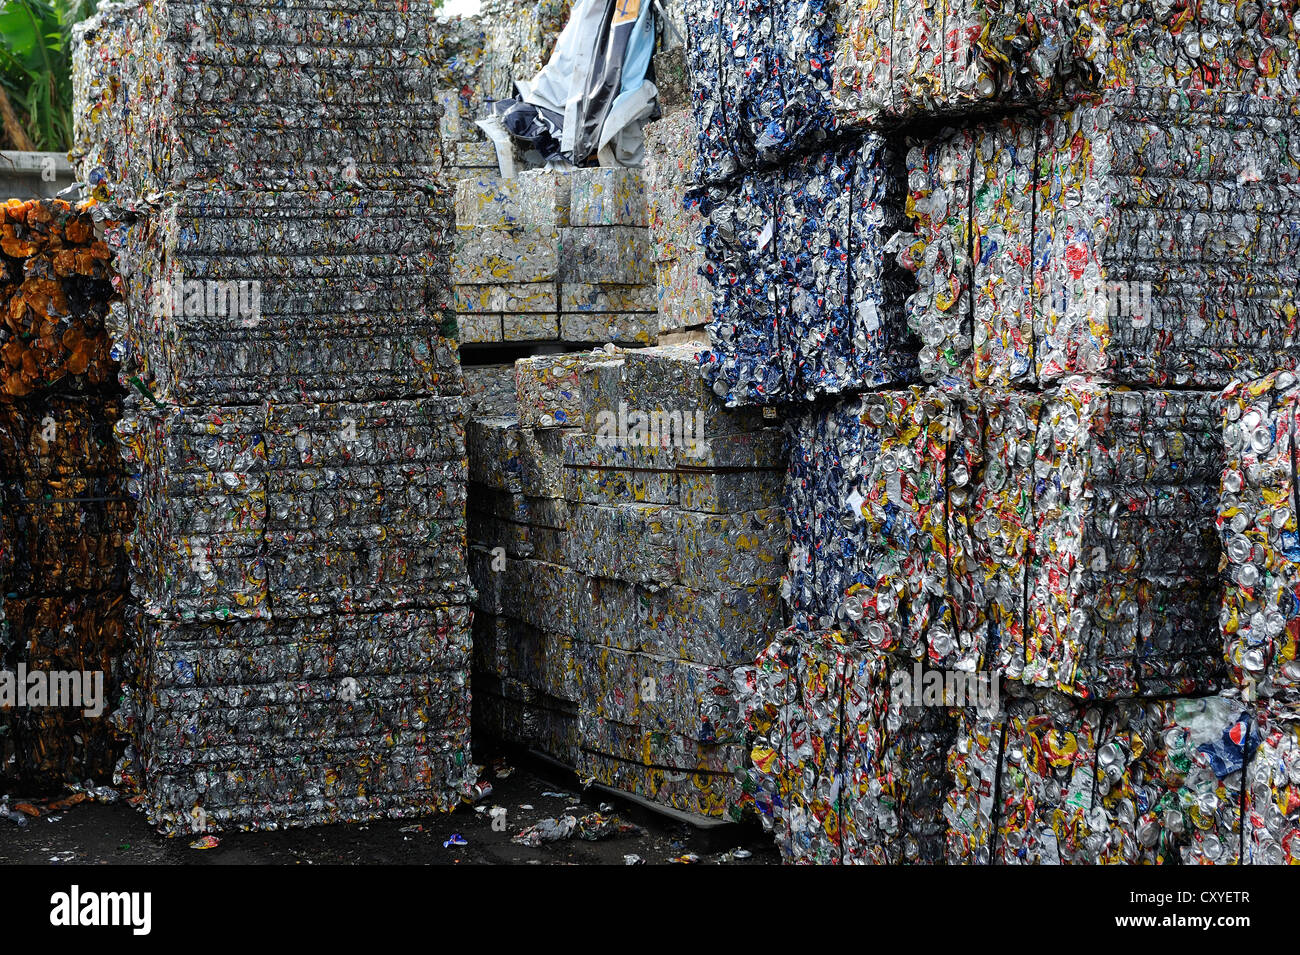 Blechdosen gepresst Blöcke, Weißblech, Aluminium, für den Export nach China in eine recycling-Anlage, San José, Costa Rica Stockfoto